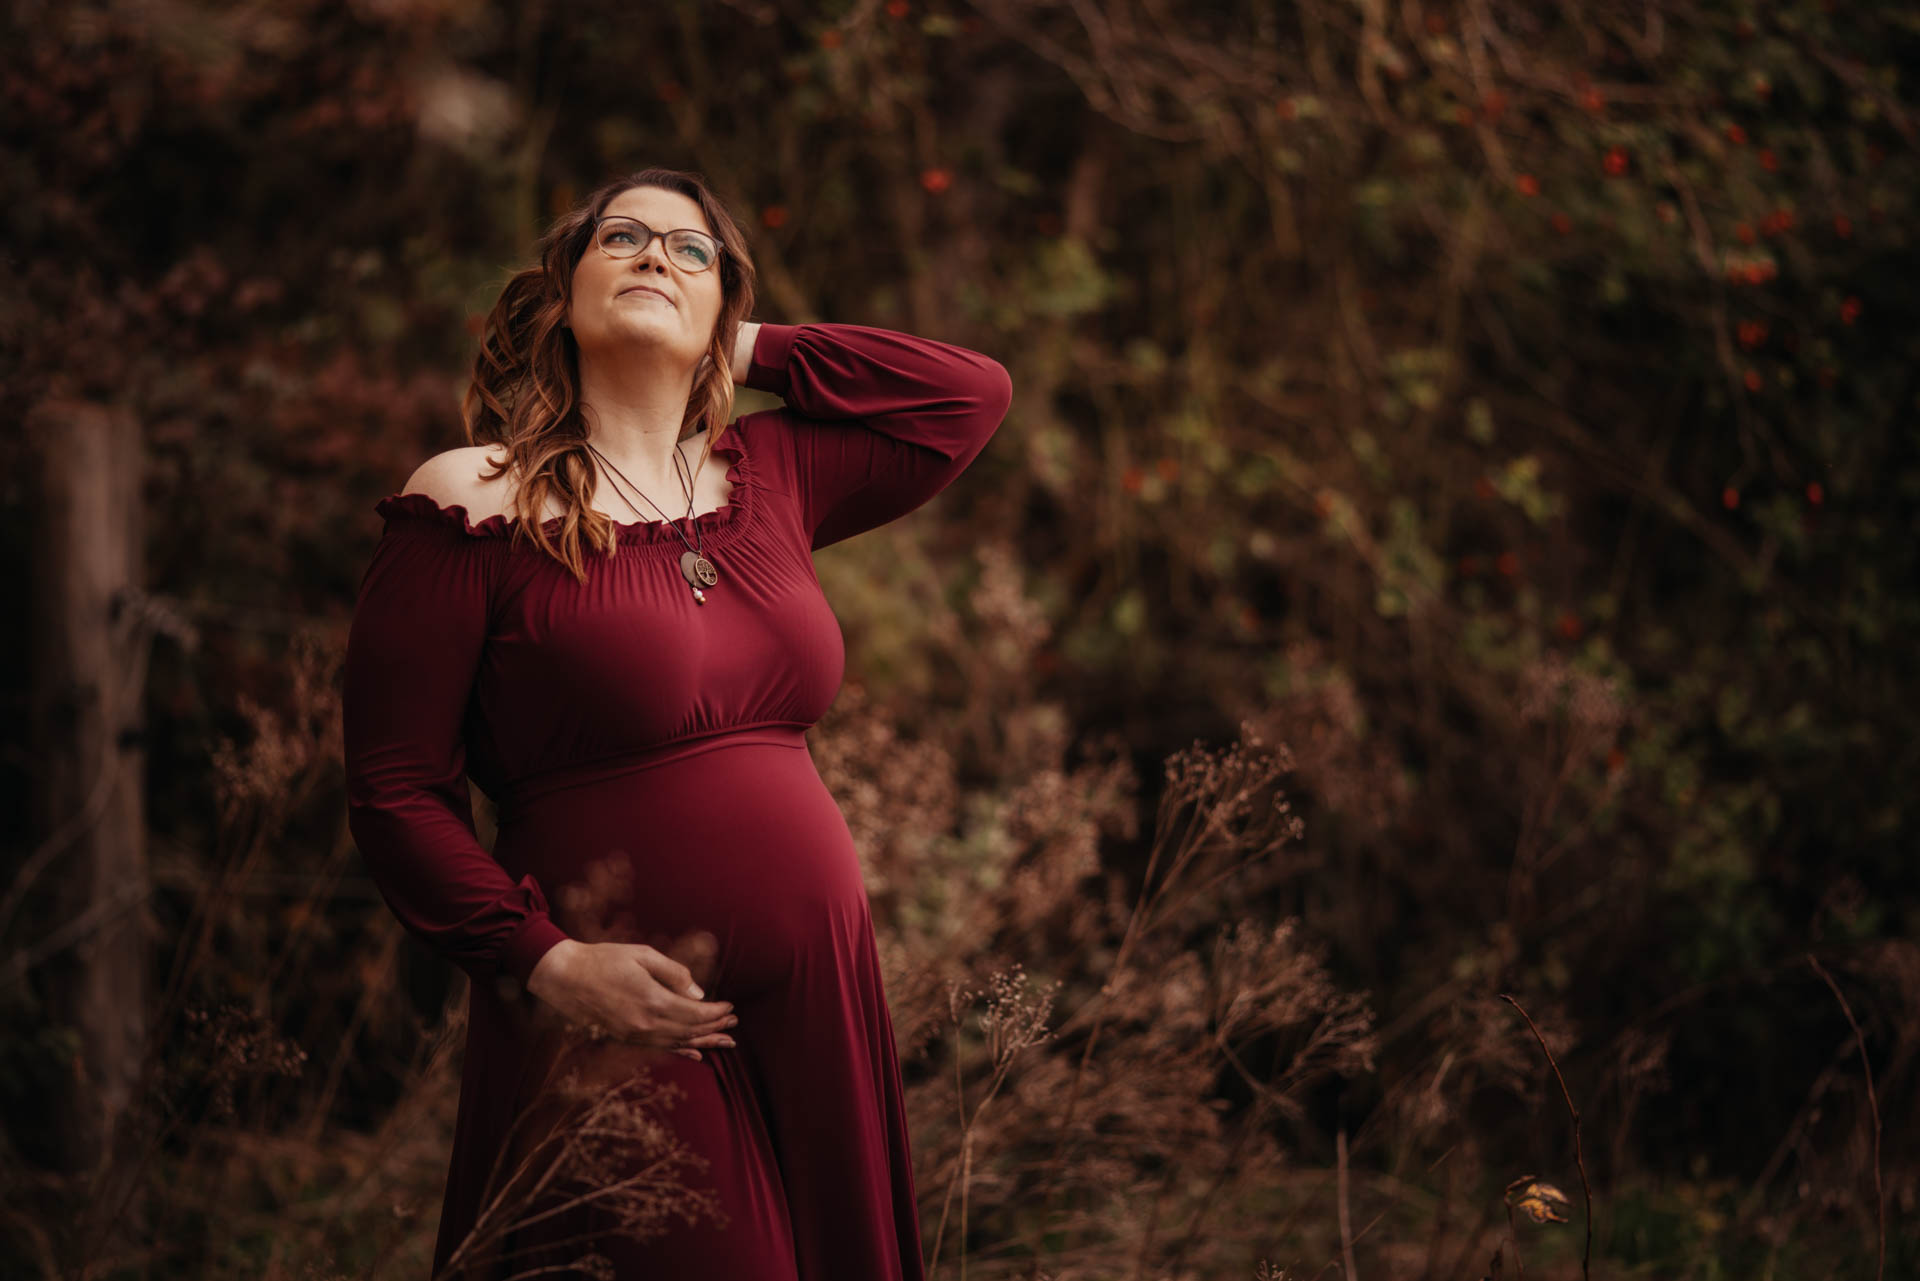 schwangere Frau im petrolfarbenen Samtkleid steht zwischen Disteln im hohen trockenen Gras